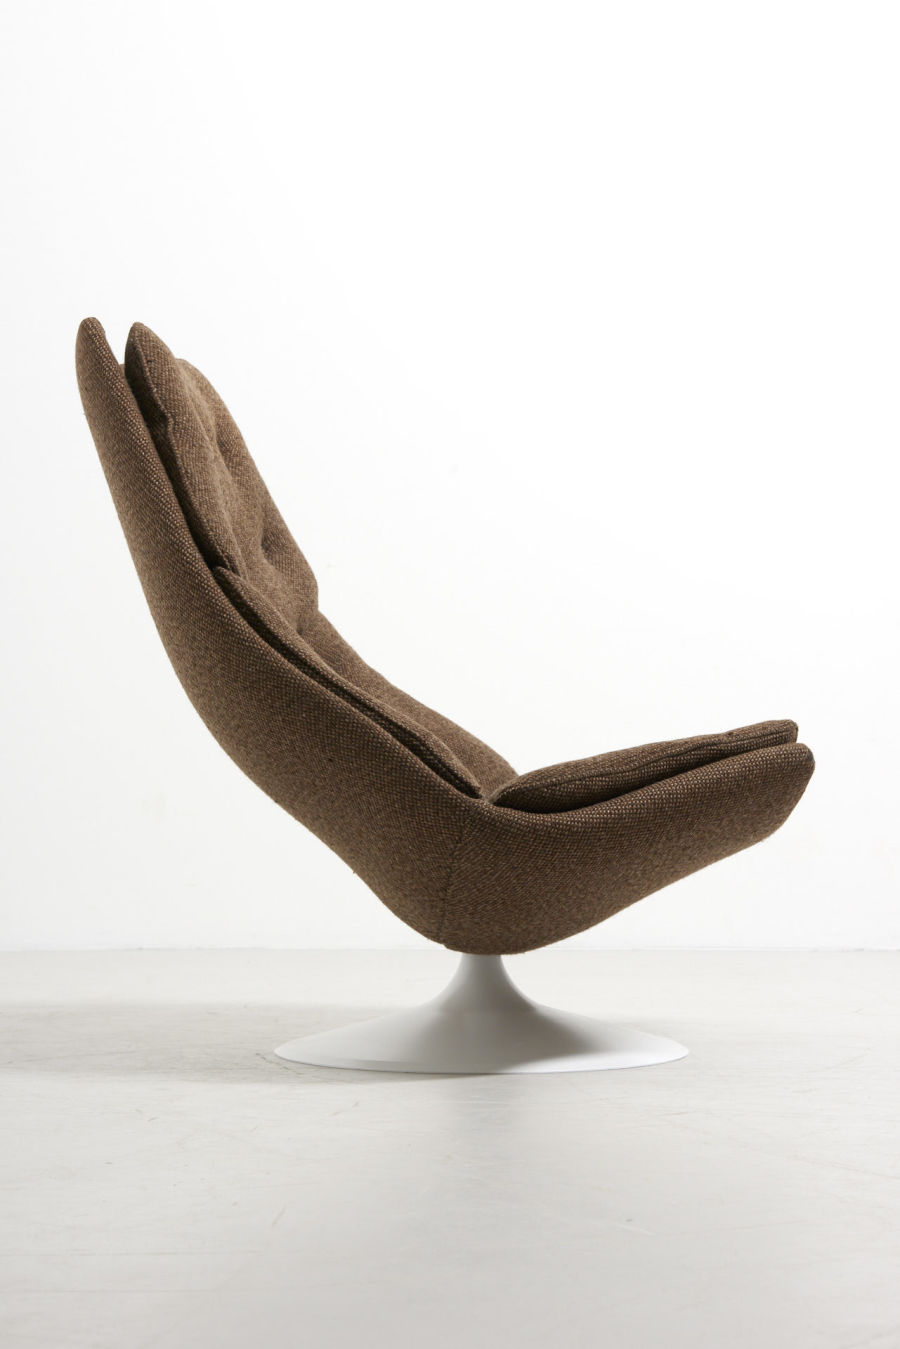 modestfurniture-vintage-2691-geoffrey-harcourt-lounge-chair-artifort-brown-fabric-f51105